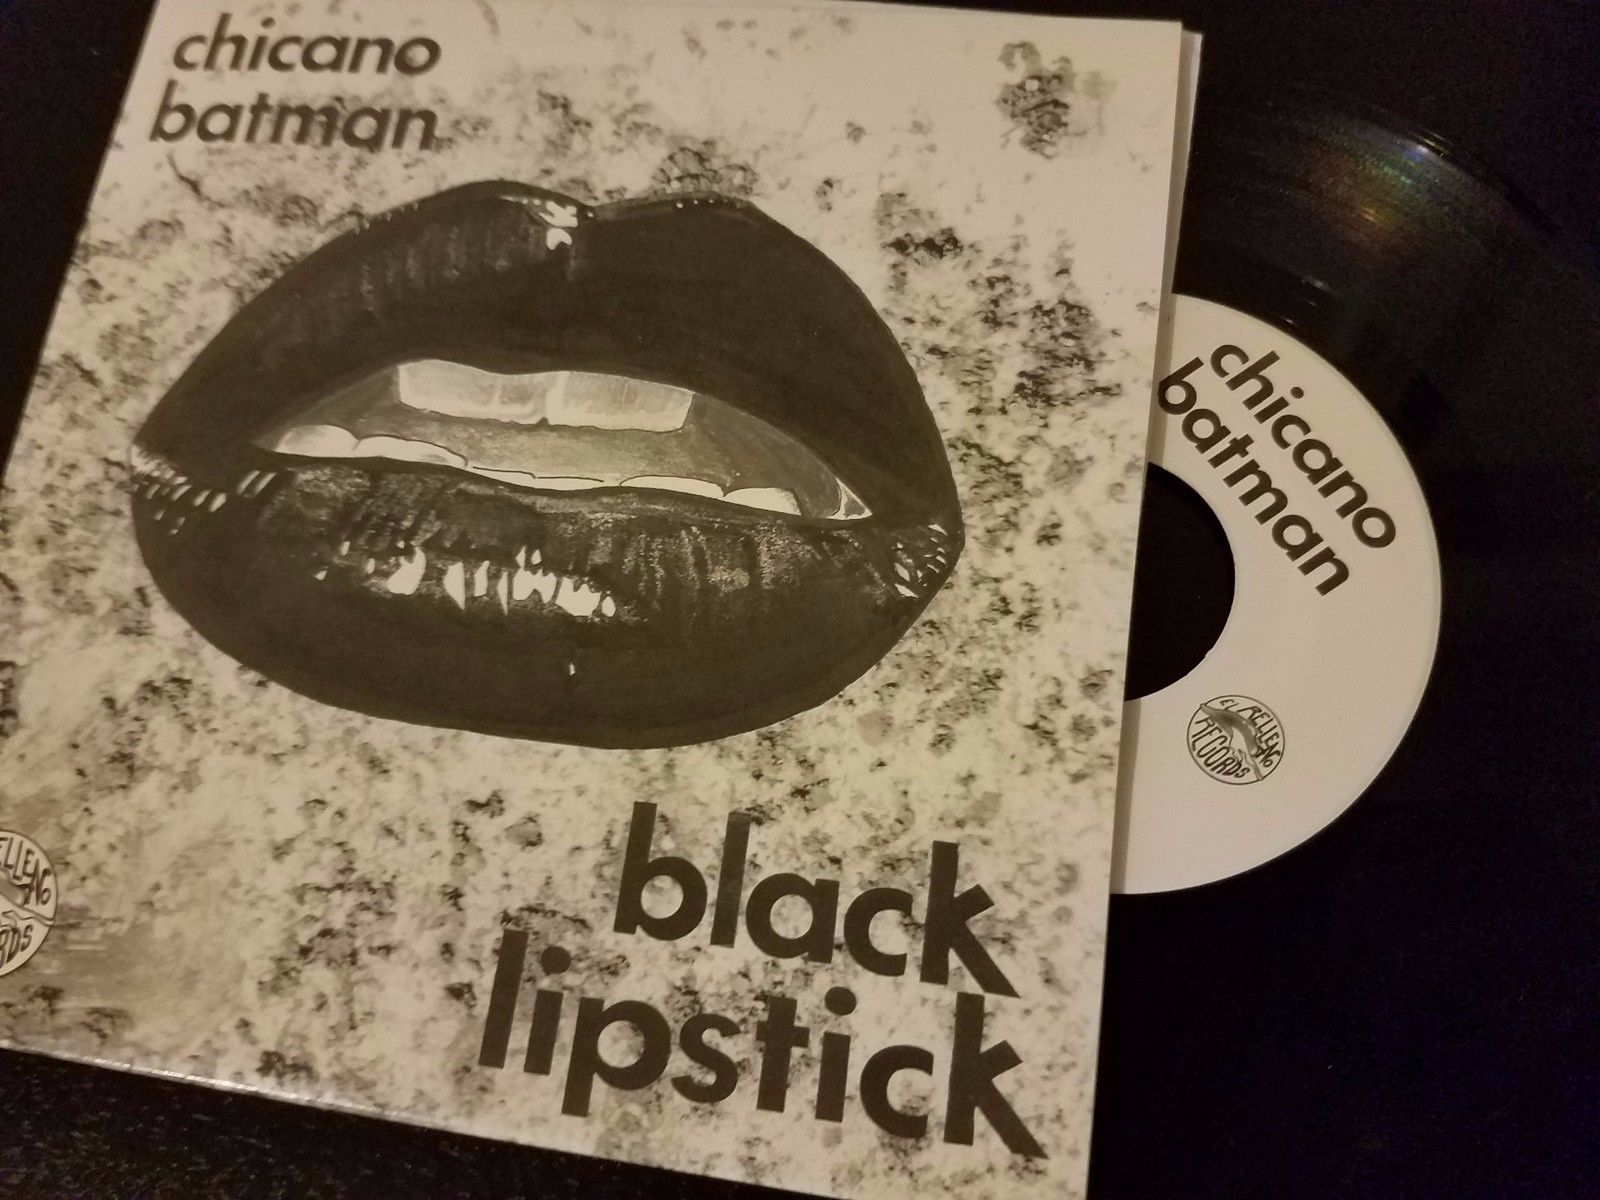  - Chicano Batman Black Lipstick Vinyl - auction details